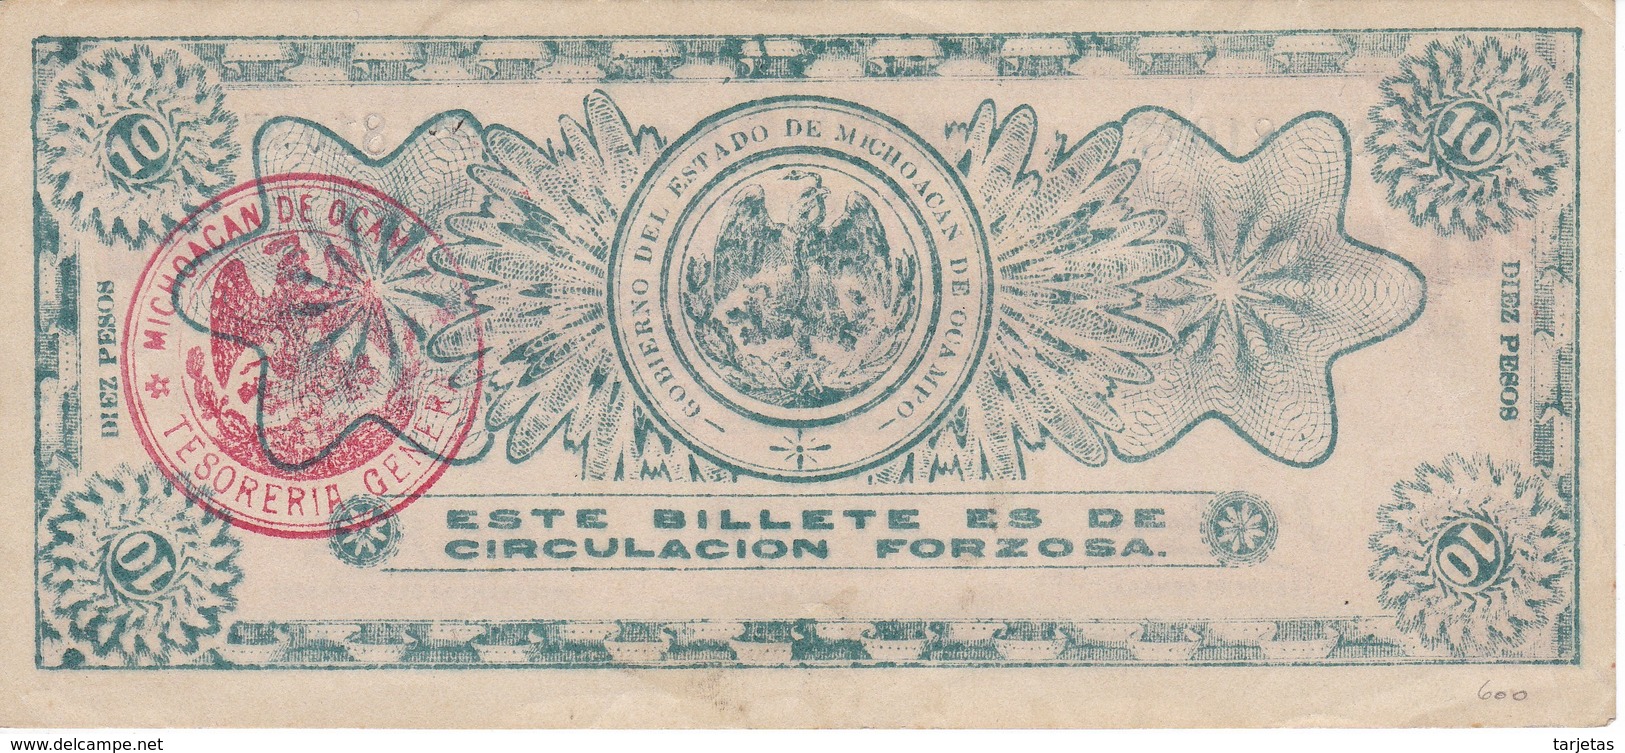 BILLETE DE MEXICO DE 10 PESOS DEL AÑO 1915 ESTADO DE MICHOACAN DE OCAMPO  (BANKNOTE)  RARO - Mexico